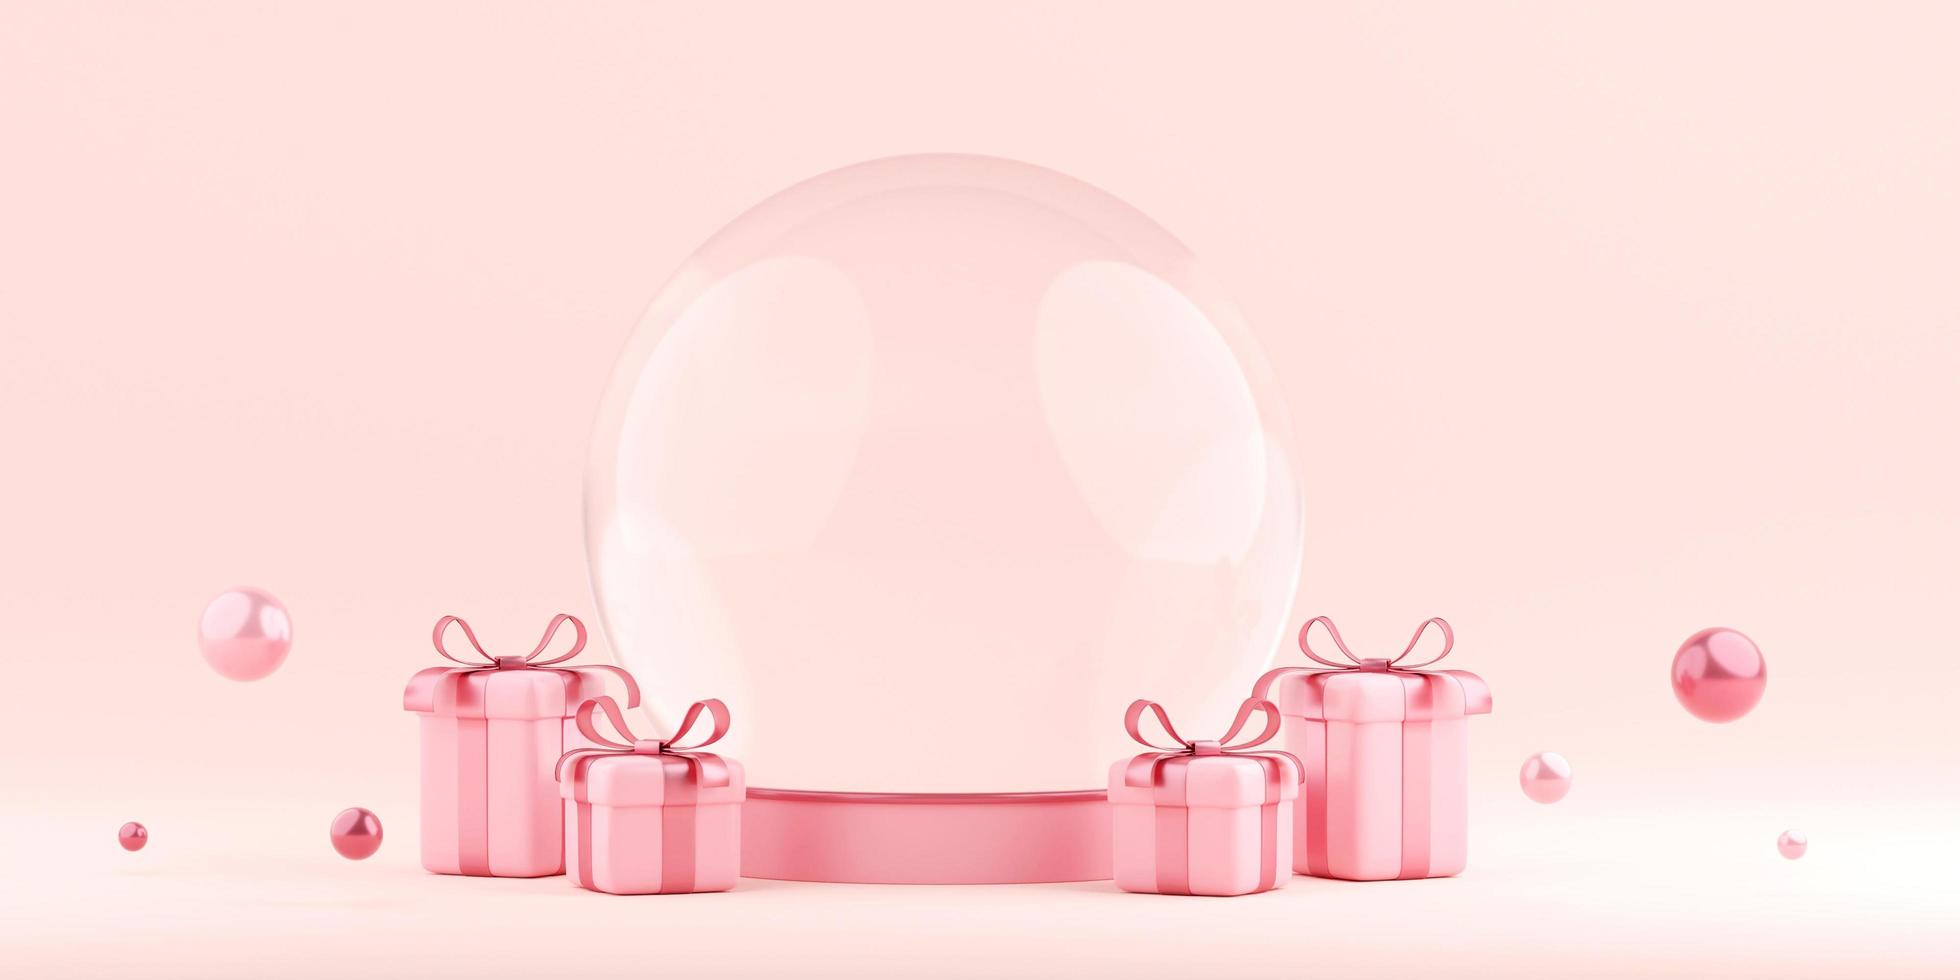 Bannière d'illustration 3d de globe de cristal avec boîte-cadeau, joyeuse saint valentin photo